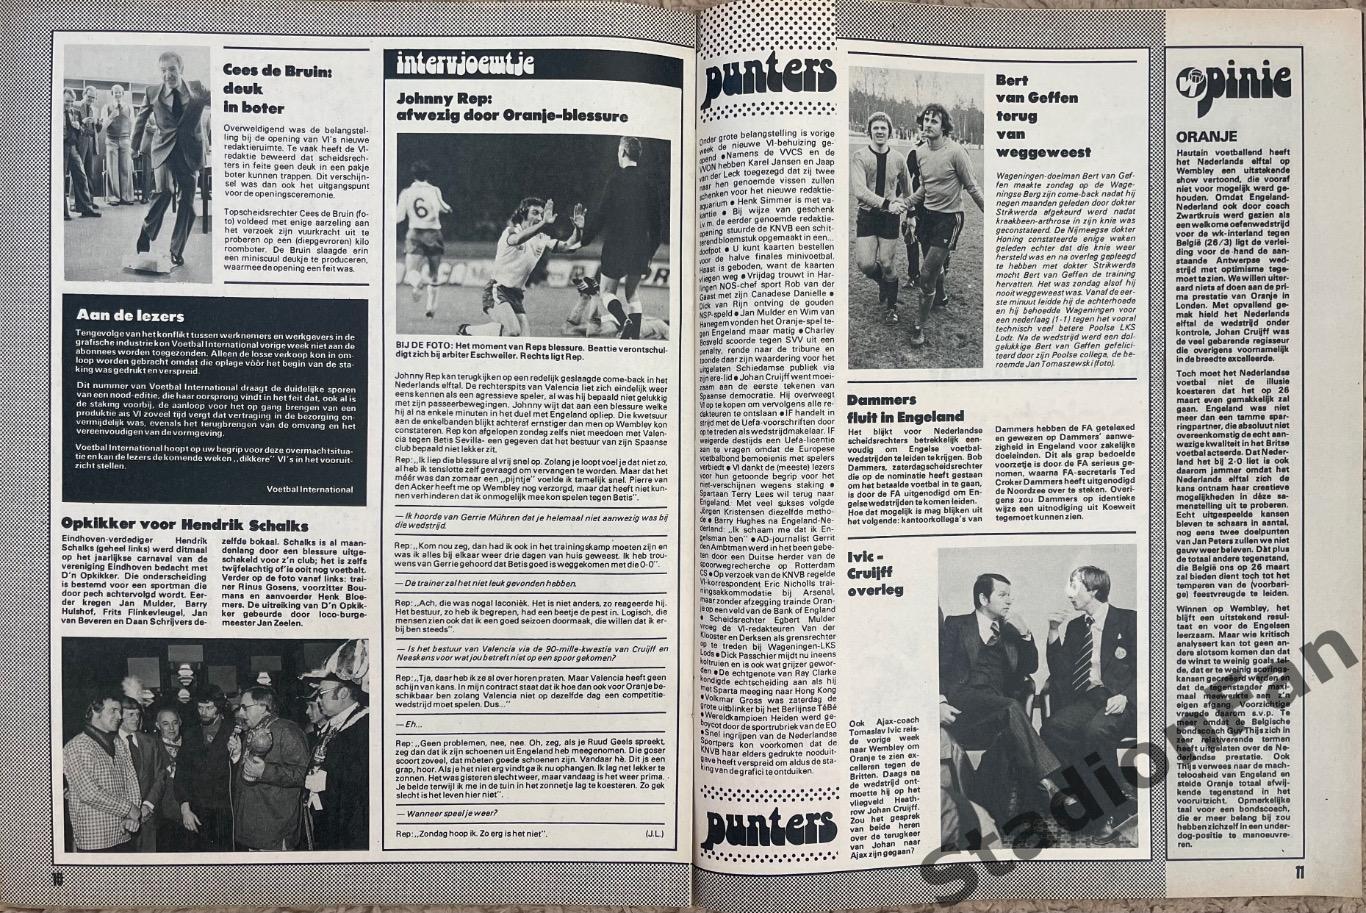 Журнал Voetbal nr.7 - 1977 год. 6